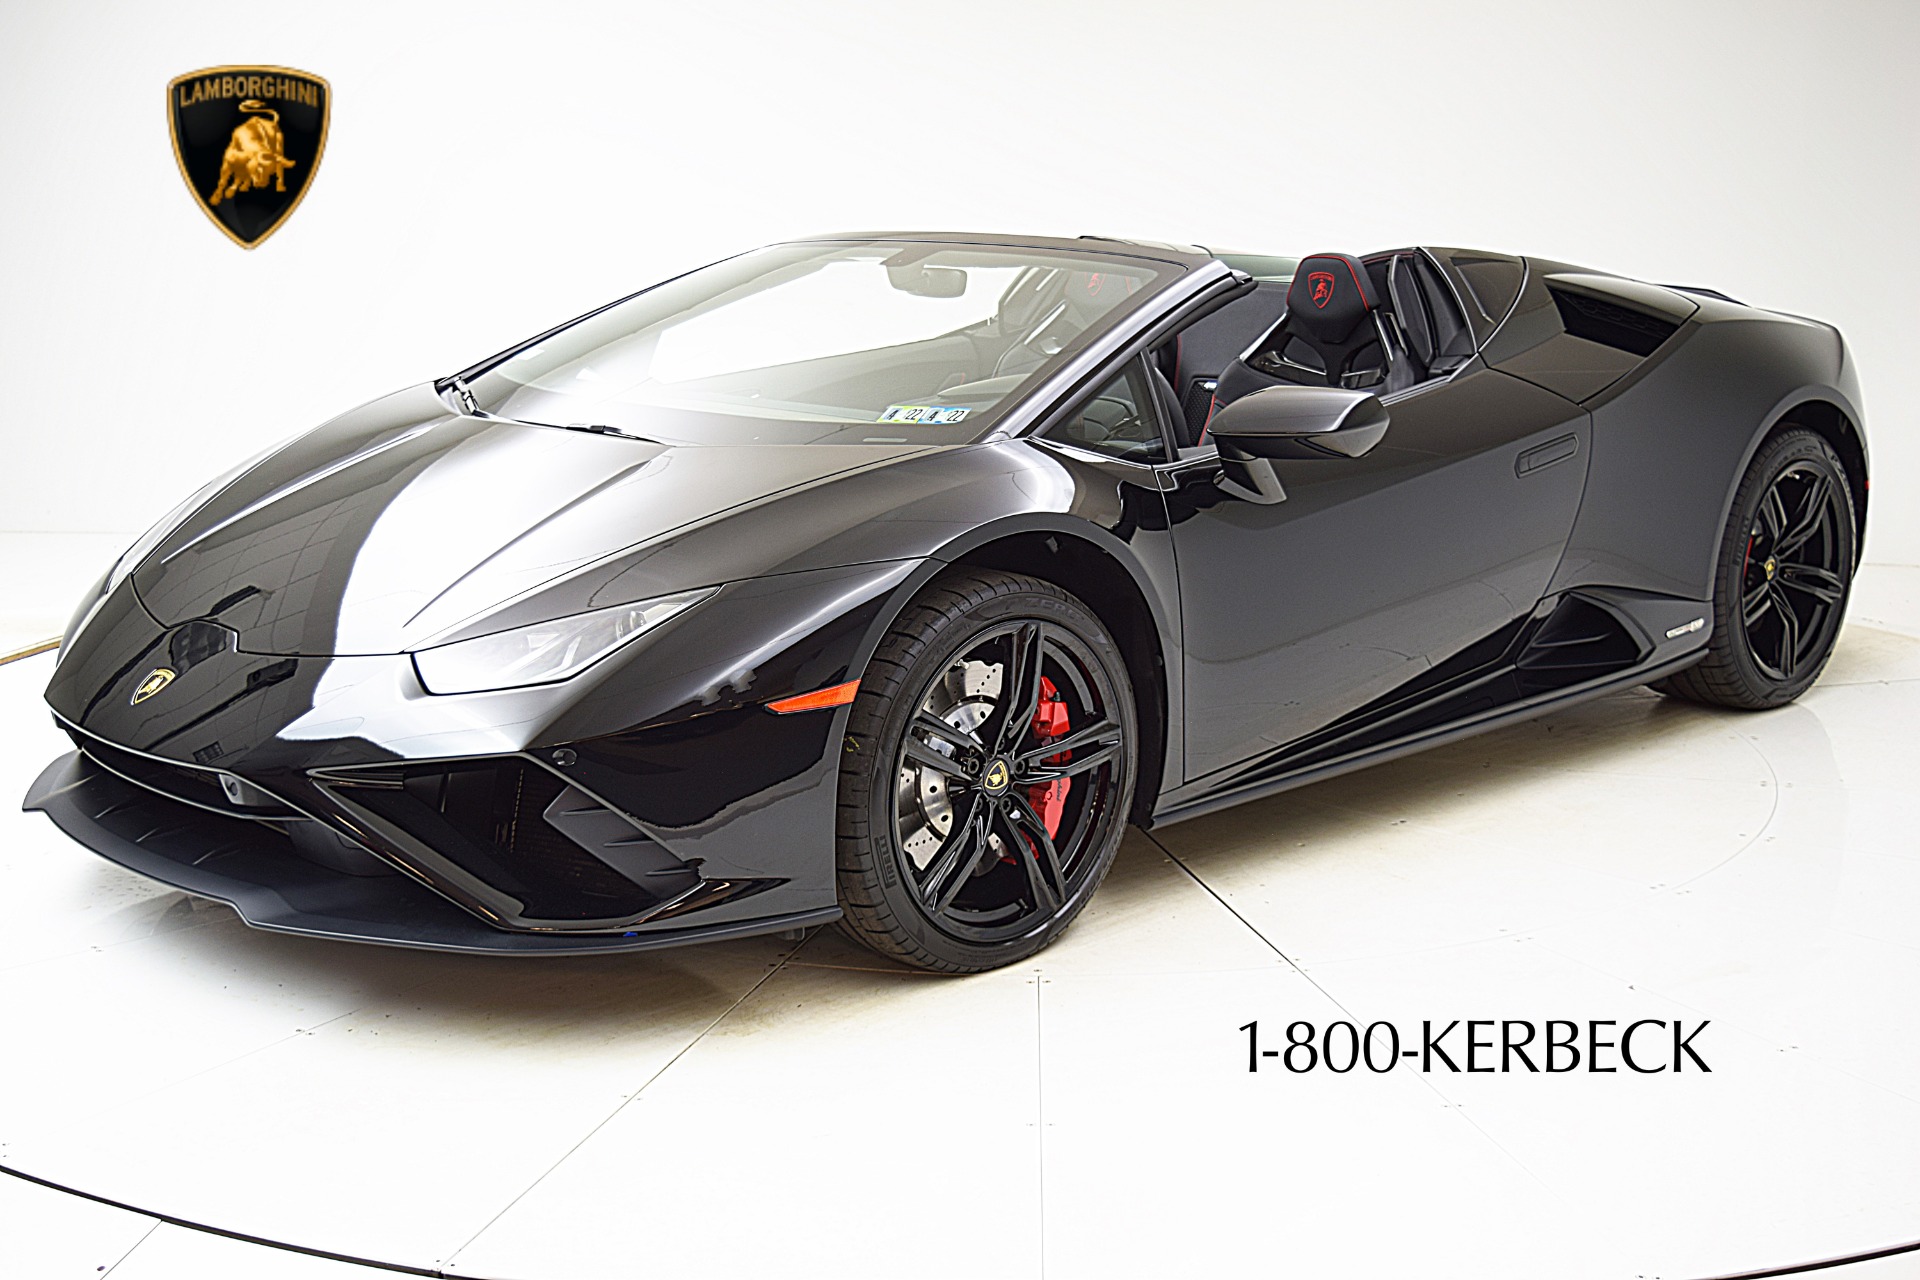 Used 2020 Lamborghini Huracan EVO for sale $319,880 at F.C. Kerbeck Rolls-Royce in Palmyra NJ 08065 2